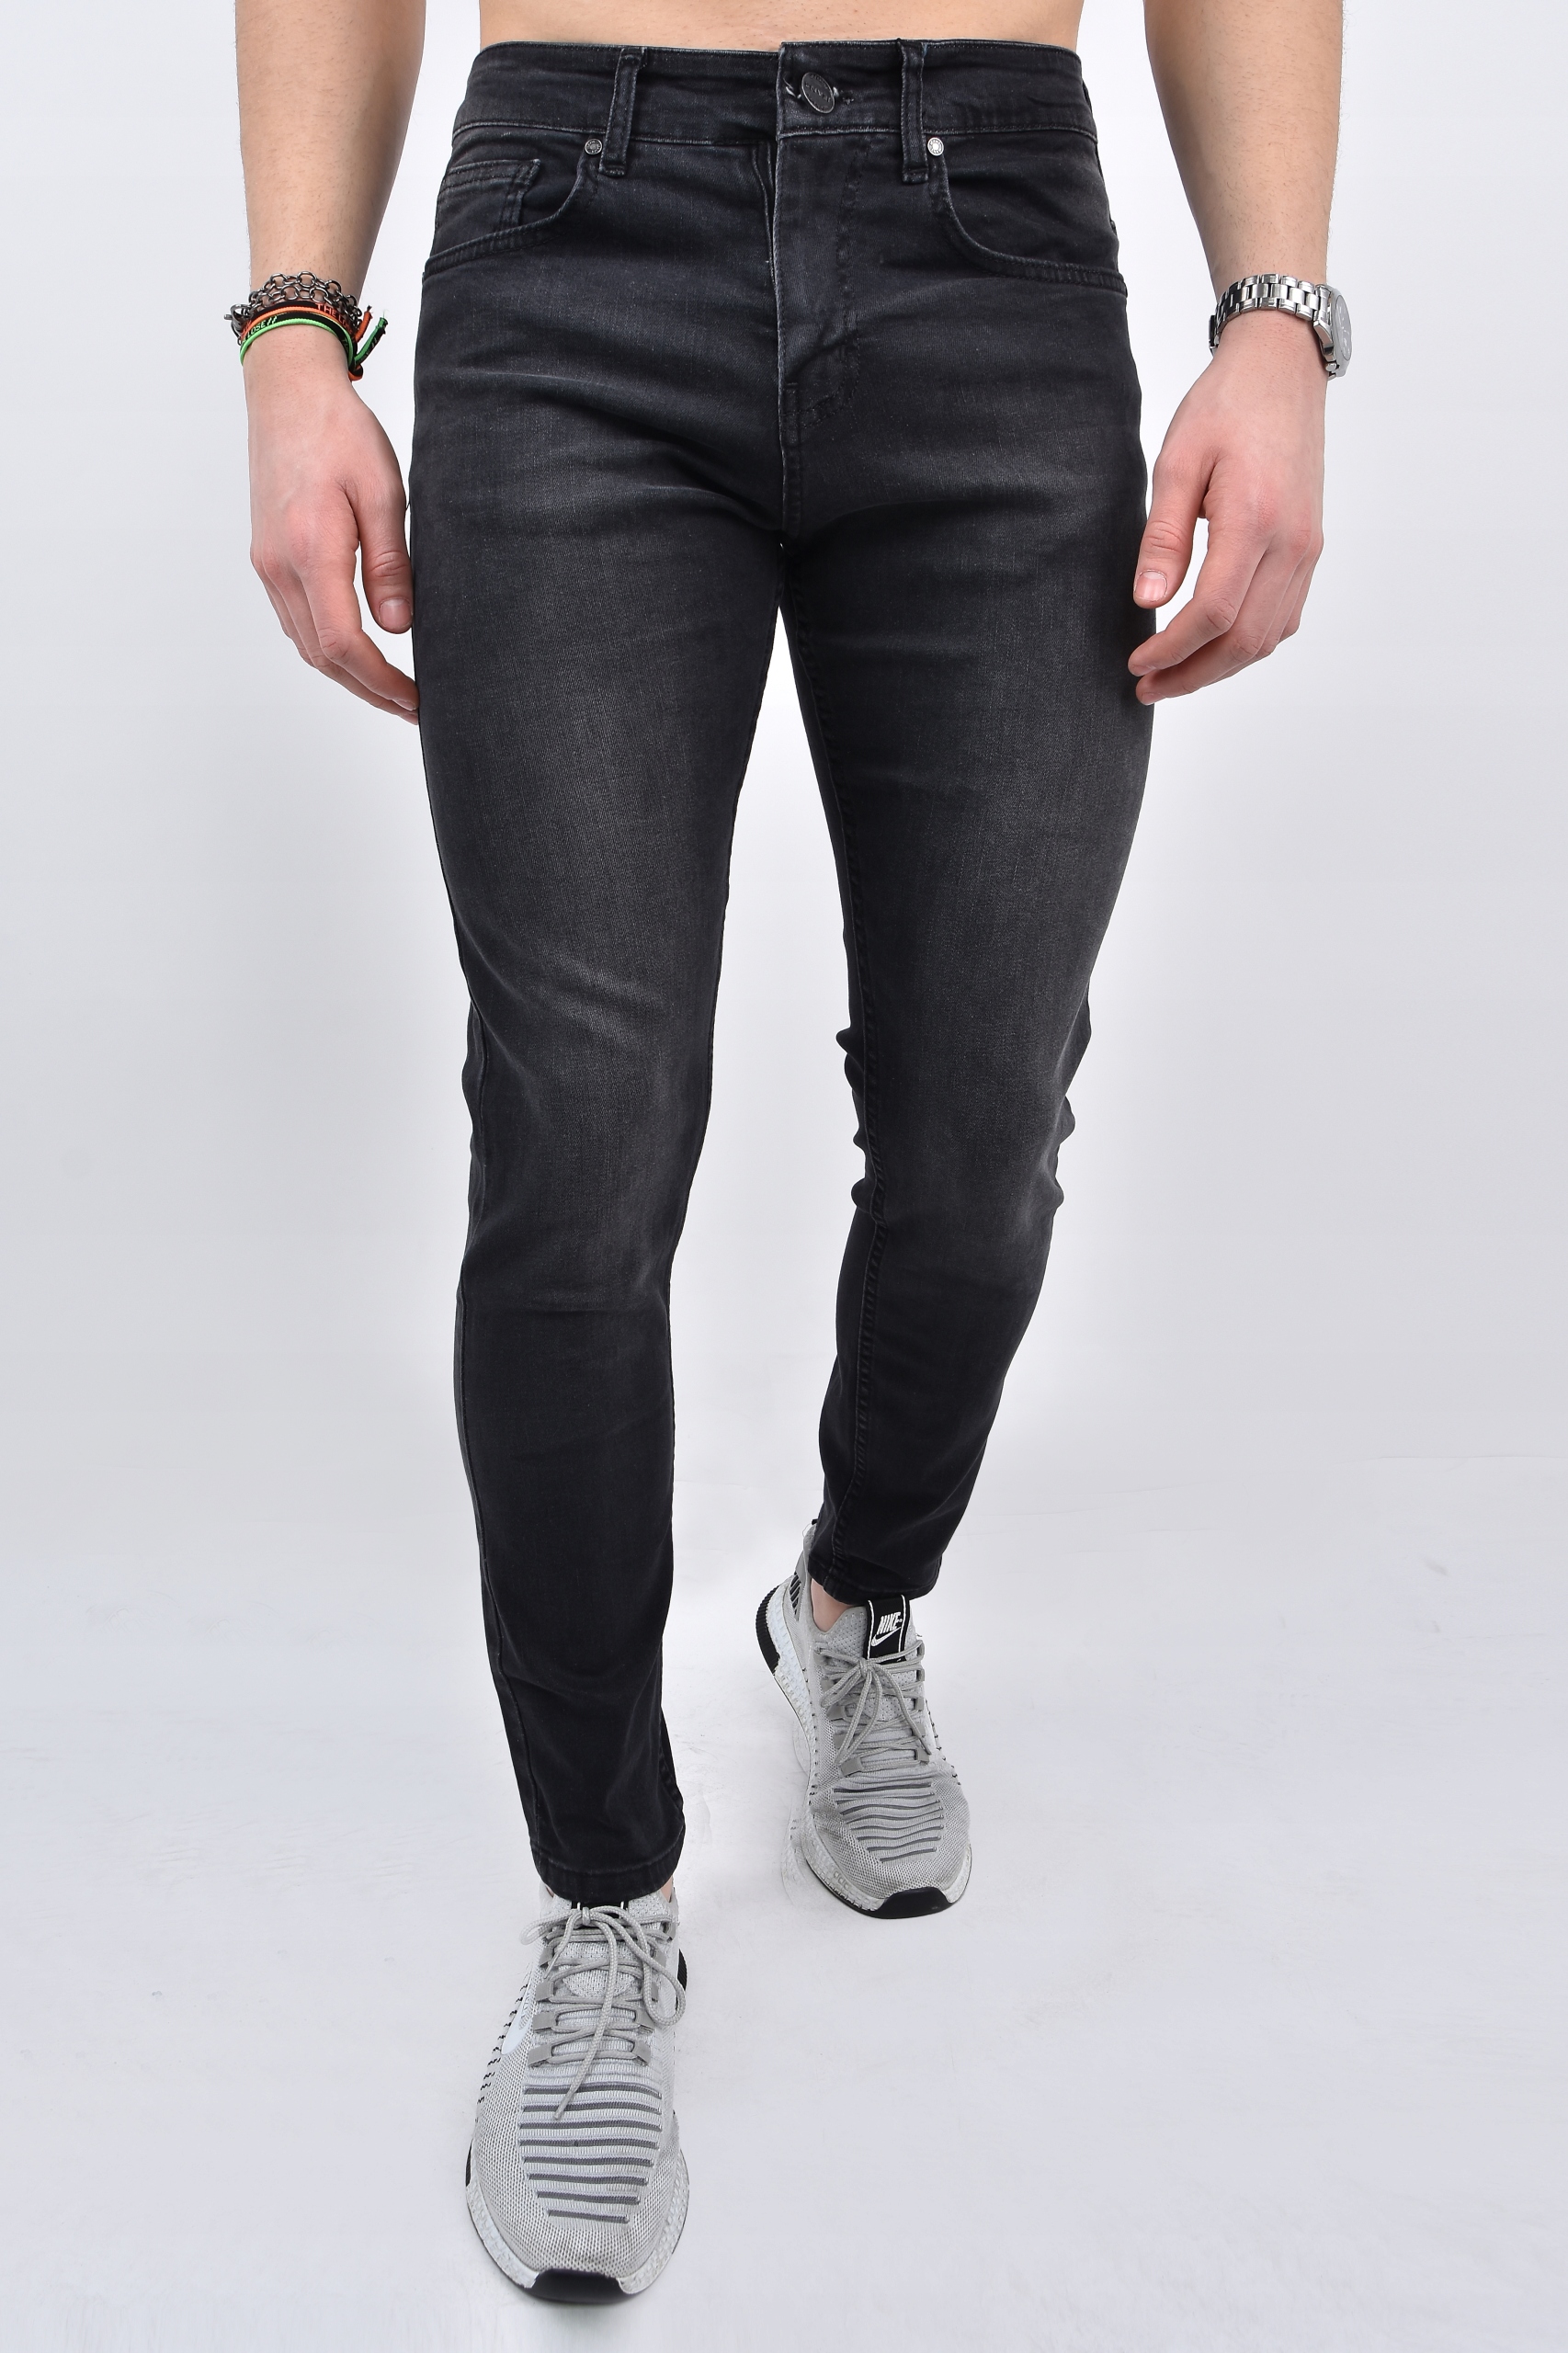 Мужские джинсовые брюки Black PSLM33 FOTE_XL